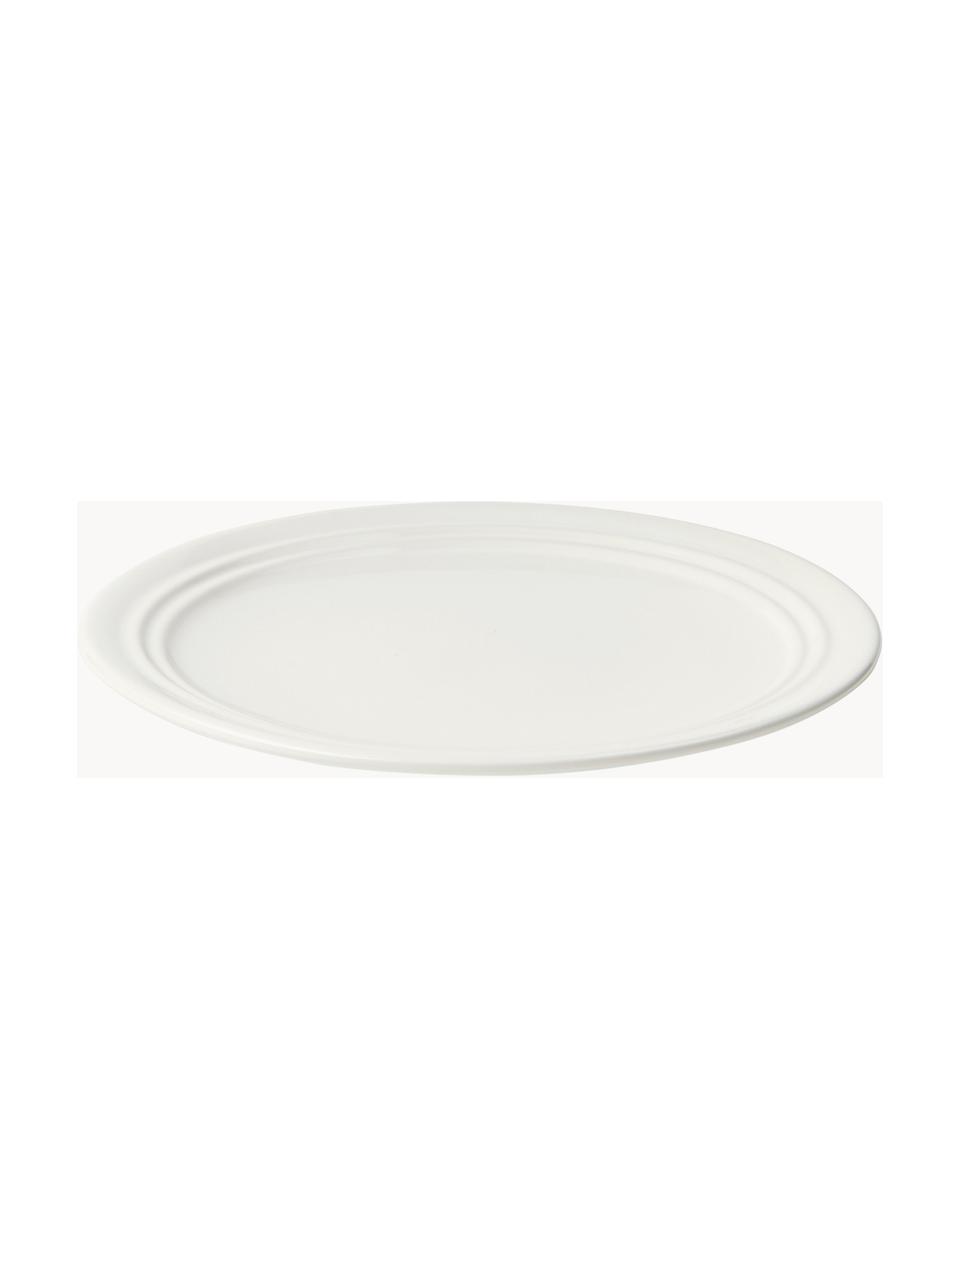 Handgefertigter Frühstücksteller Stevns, Steingut, glasiert, Off White, glänzend, Ø 22 cm